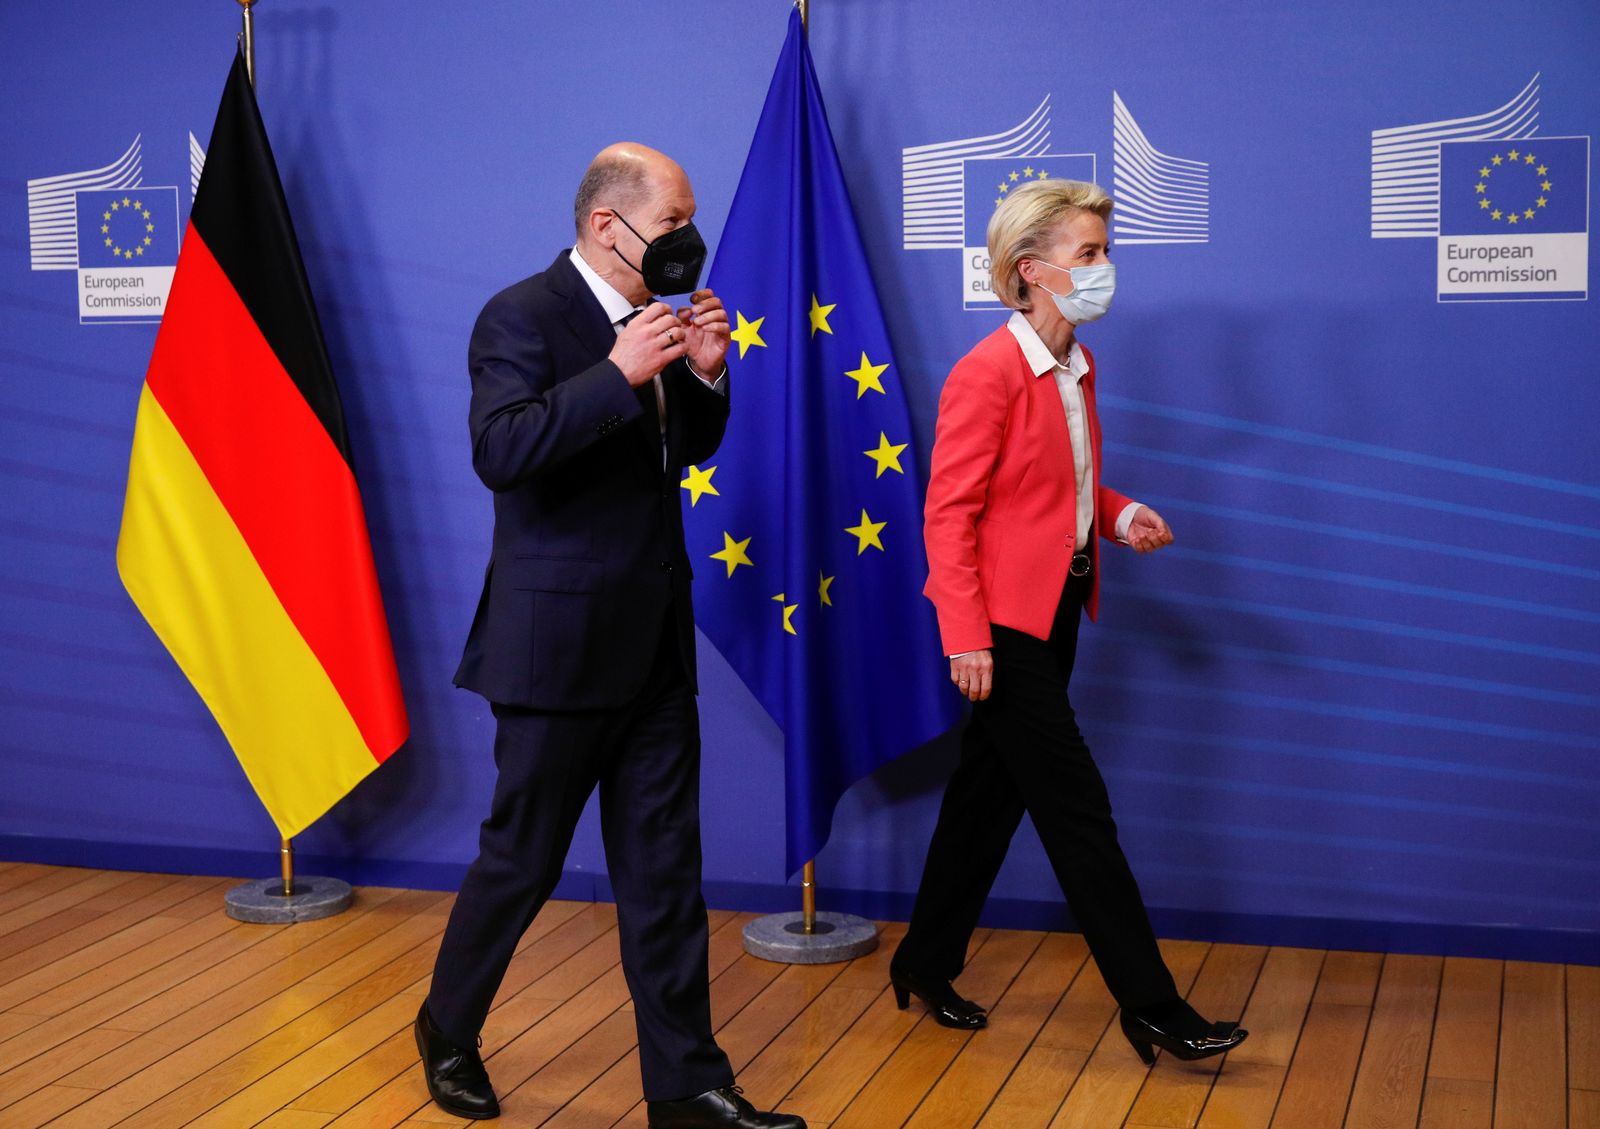 المستشار الألماني الجديد أولاف شولتس رفقه رئيسة المفوضية الأوروبية أورسولا فون دير لاين قبيل انطلاق اجتماع المفوضية الأوروبية في بروكسل - 15 ديسمبر 2021 - REUTERS 